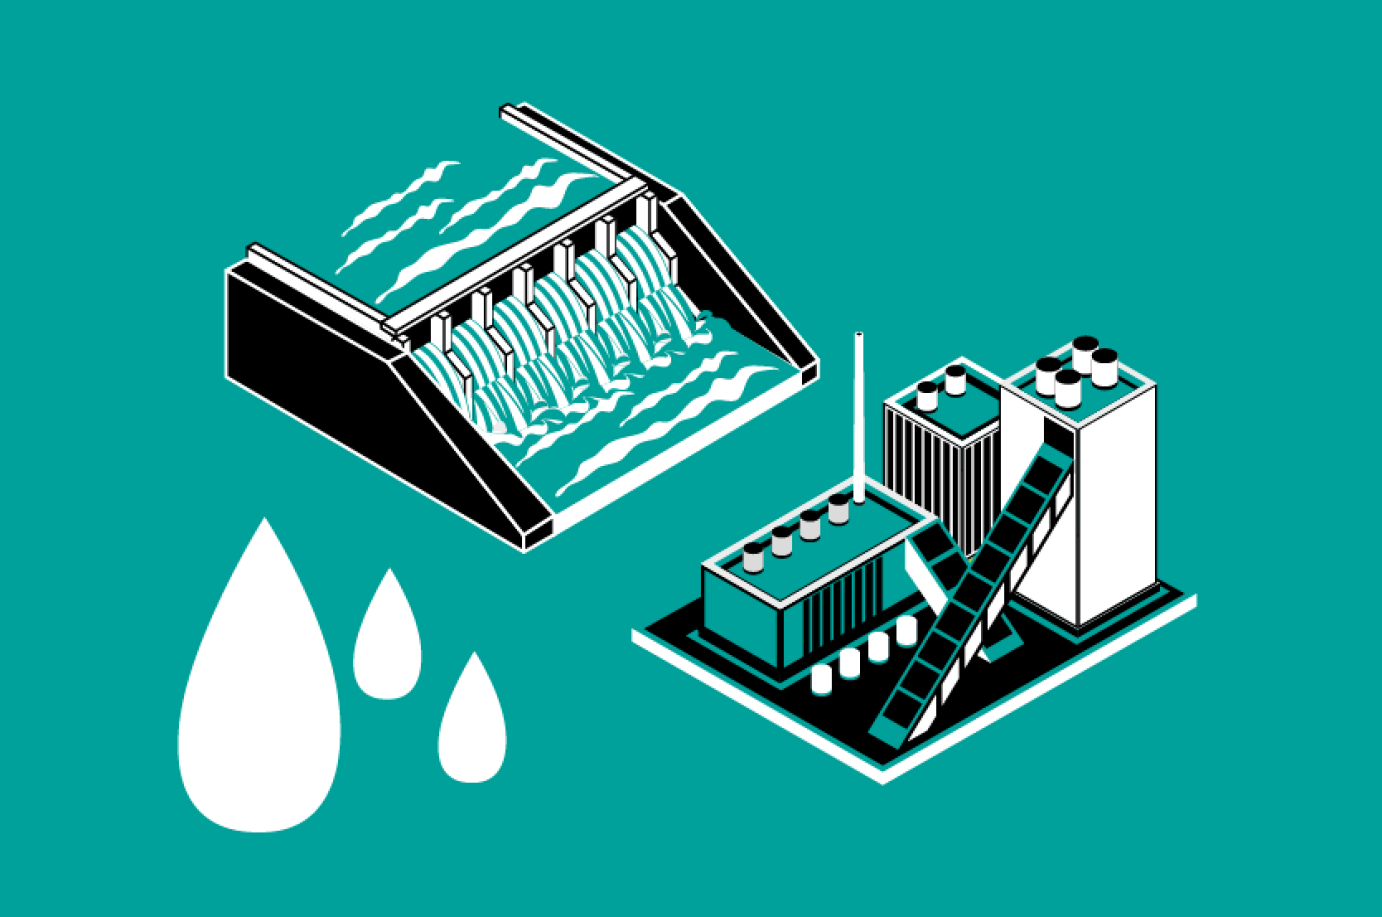 Saneamiento y depuración de agua con nuevas tecnologías